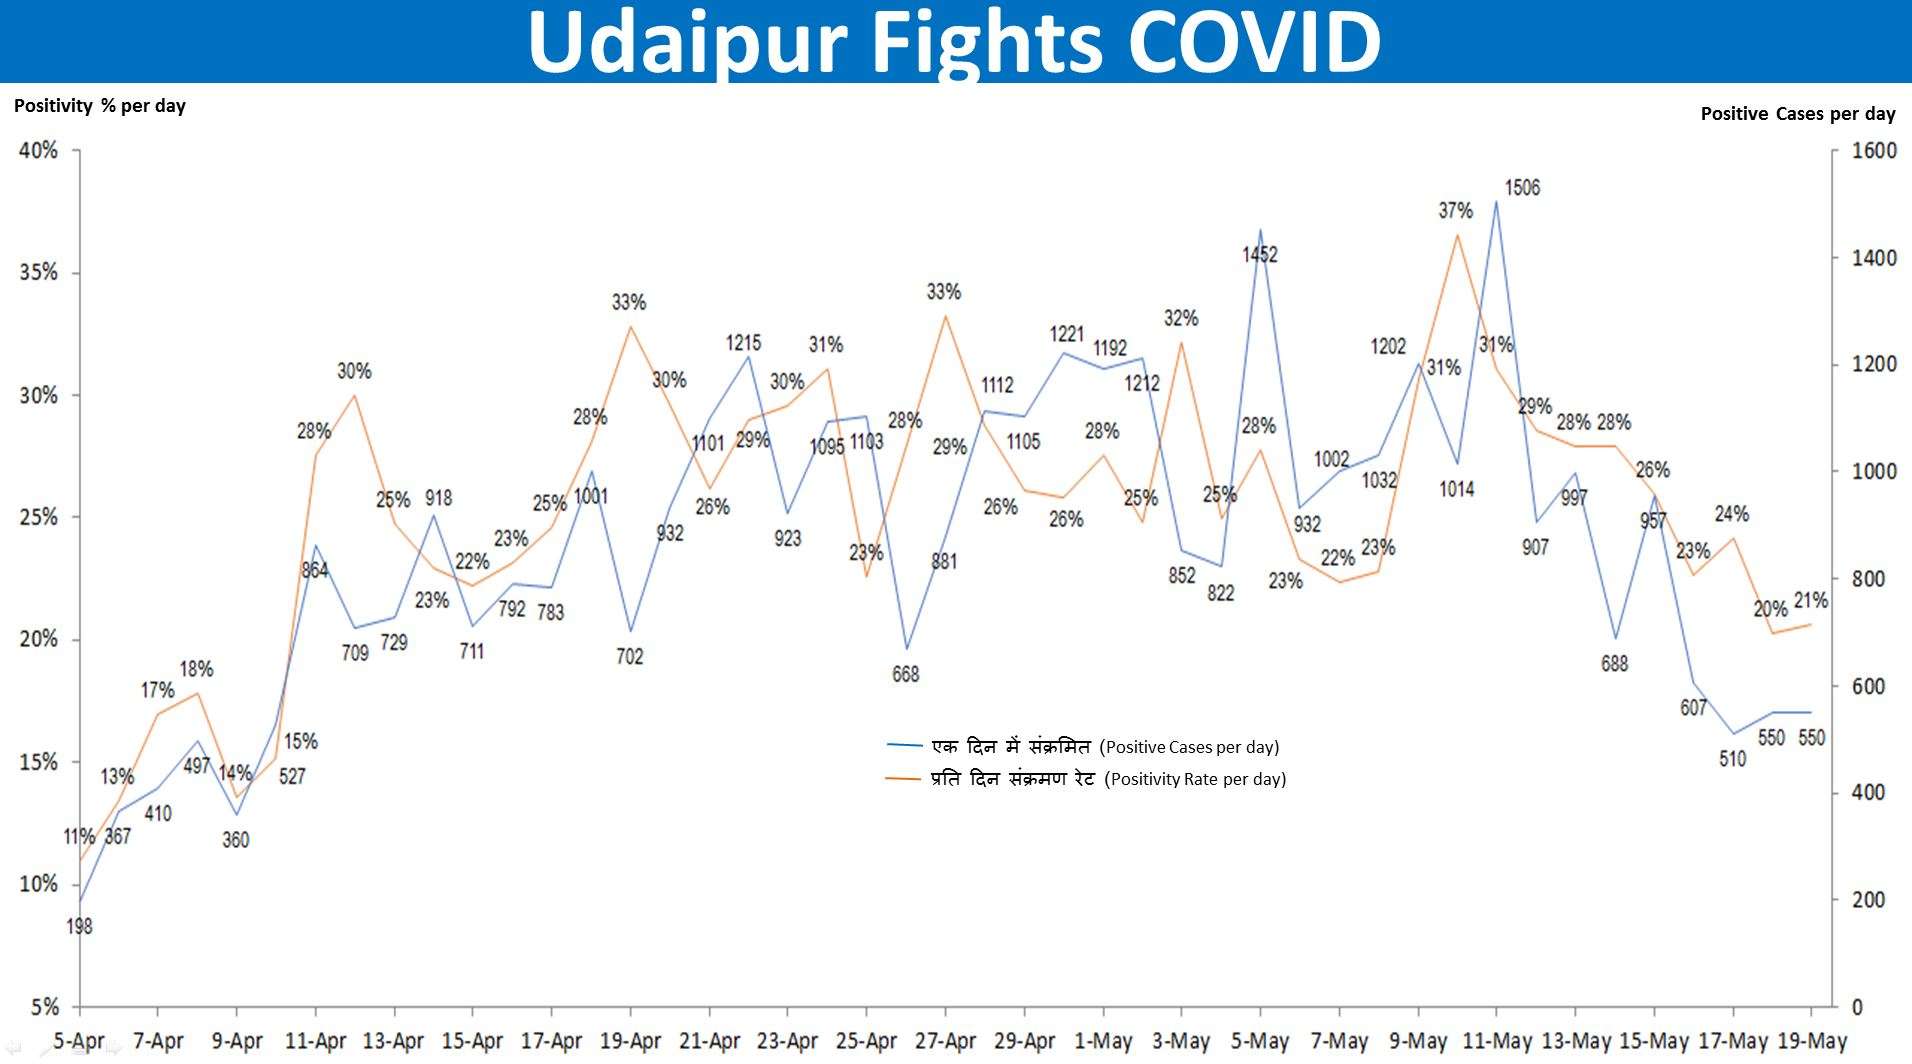 udaipur fights covid udaipur covid alert good news for udaipur covid udaipur news